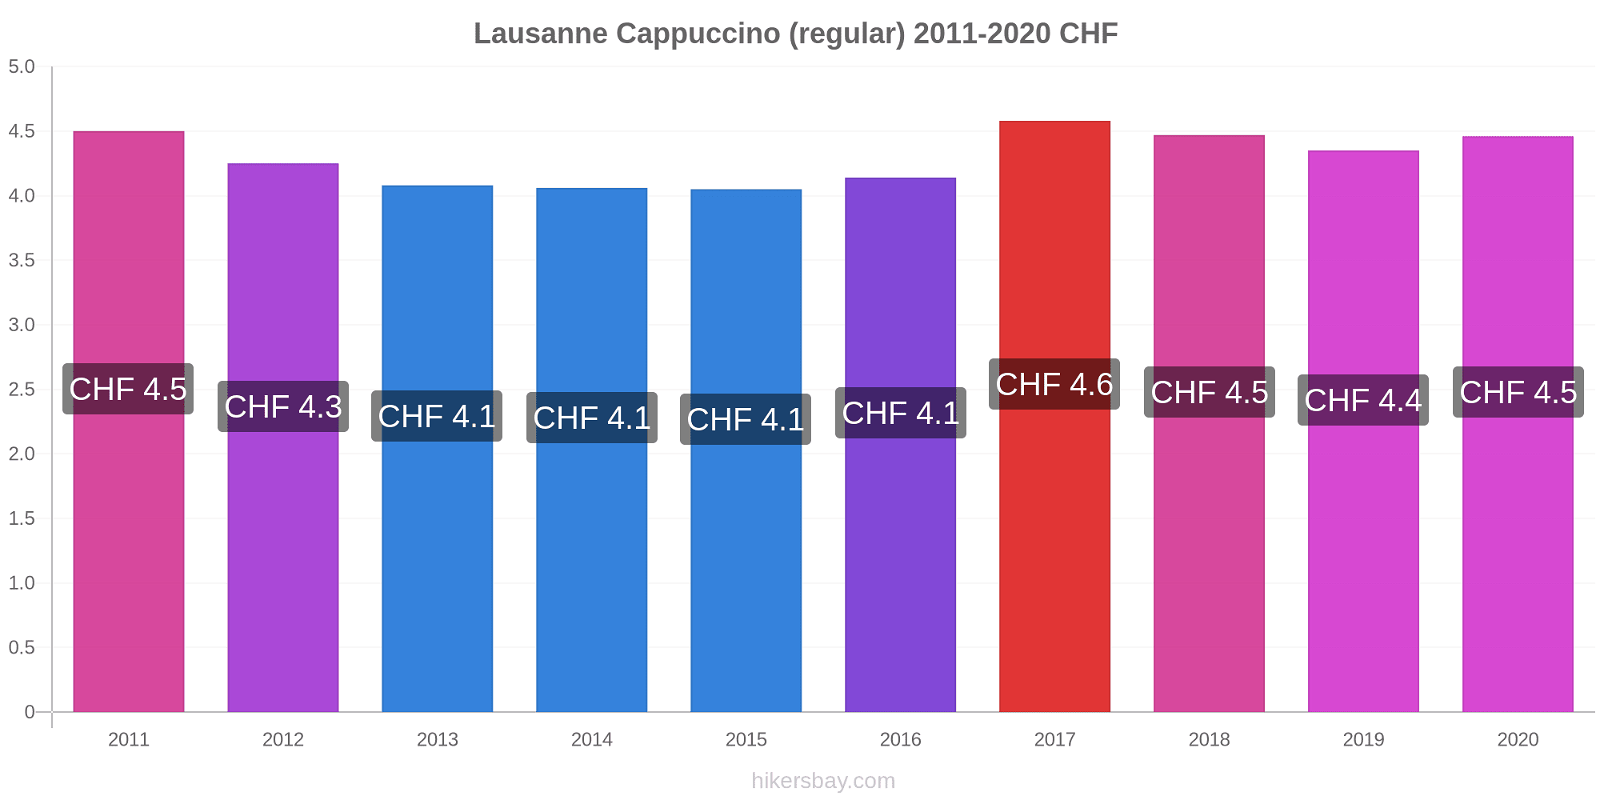 Lausanne price changes Cappuccino (regular) hikersbay.com